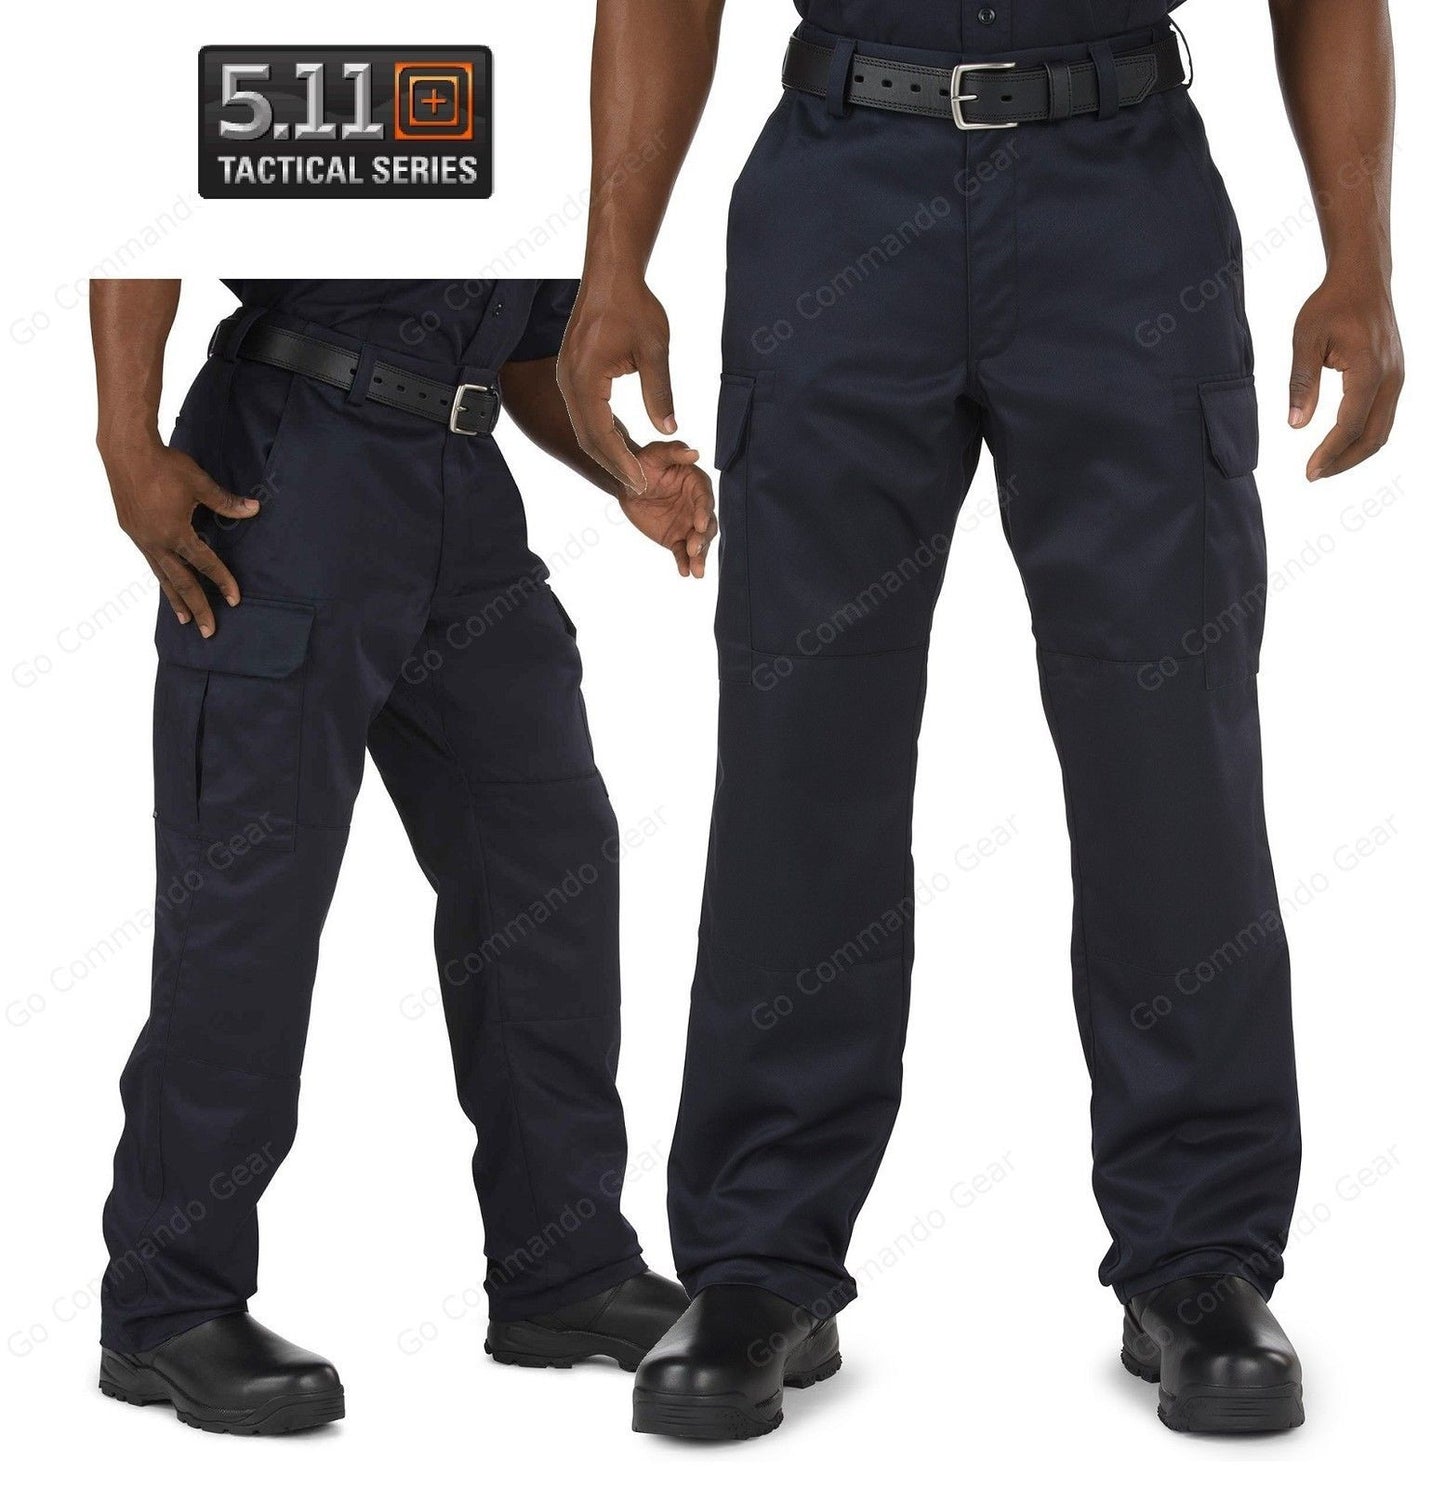 5.11 Tactical Navy Blue Fire Company Cargo Pants Mens Cotton Uniform Pant